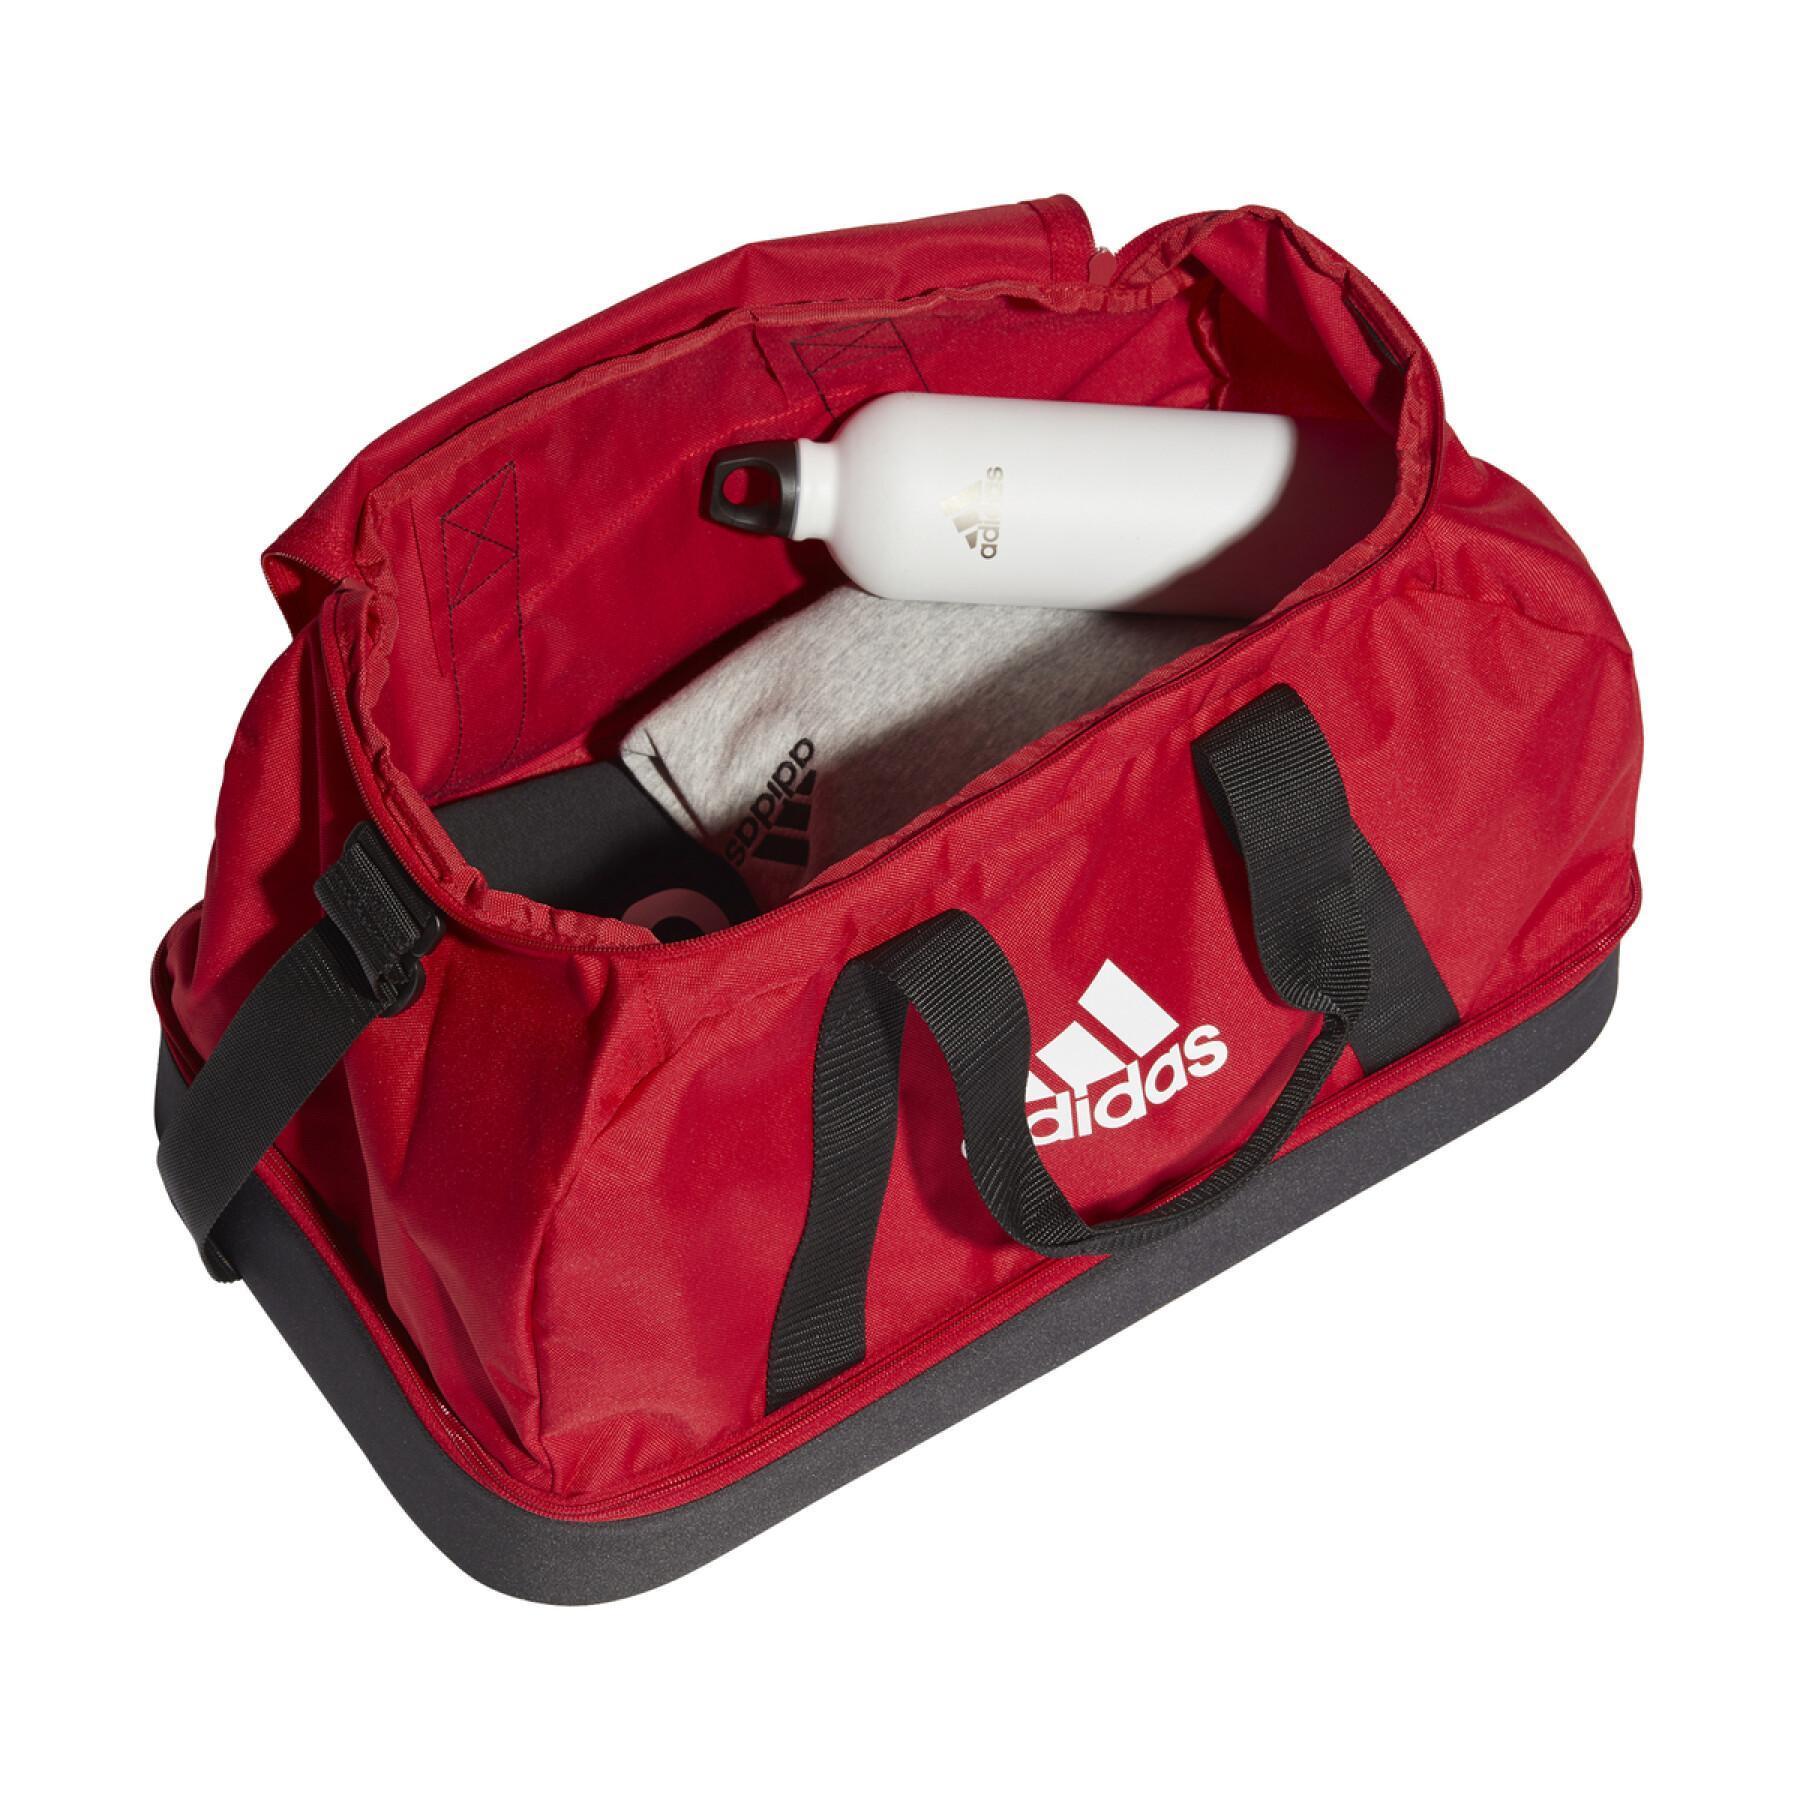 Sporttasche adidas Tiro Primegreen Bottom Compartment Small